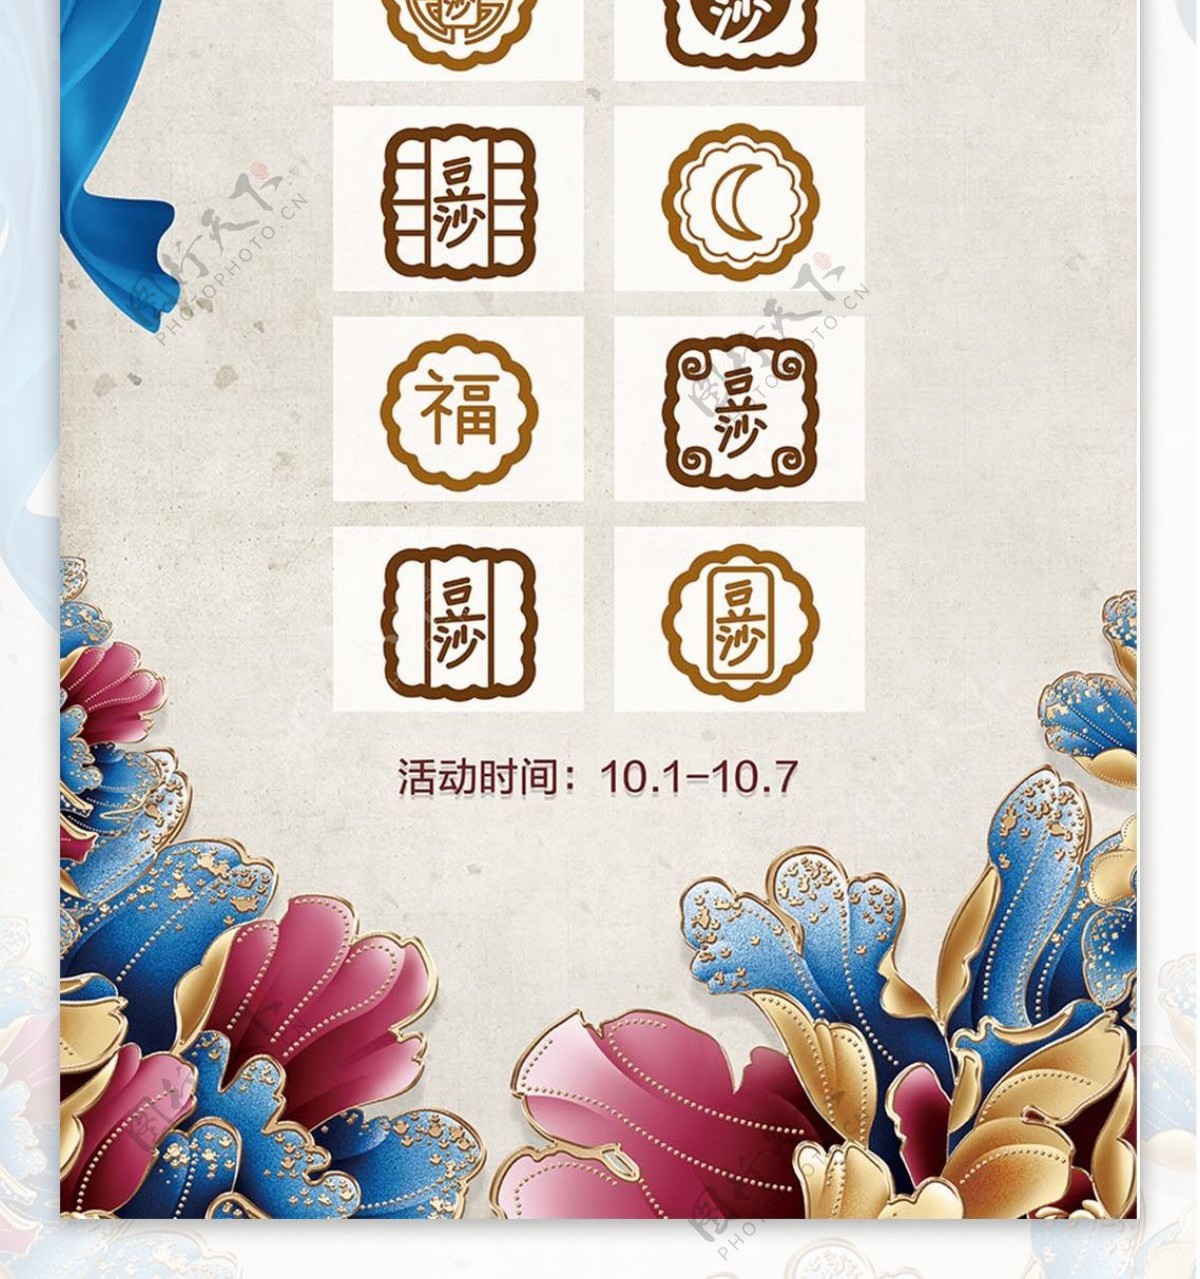 奢华中国风蓝金中秋节商城月饼促销海报